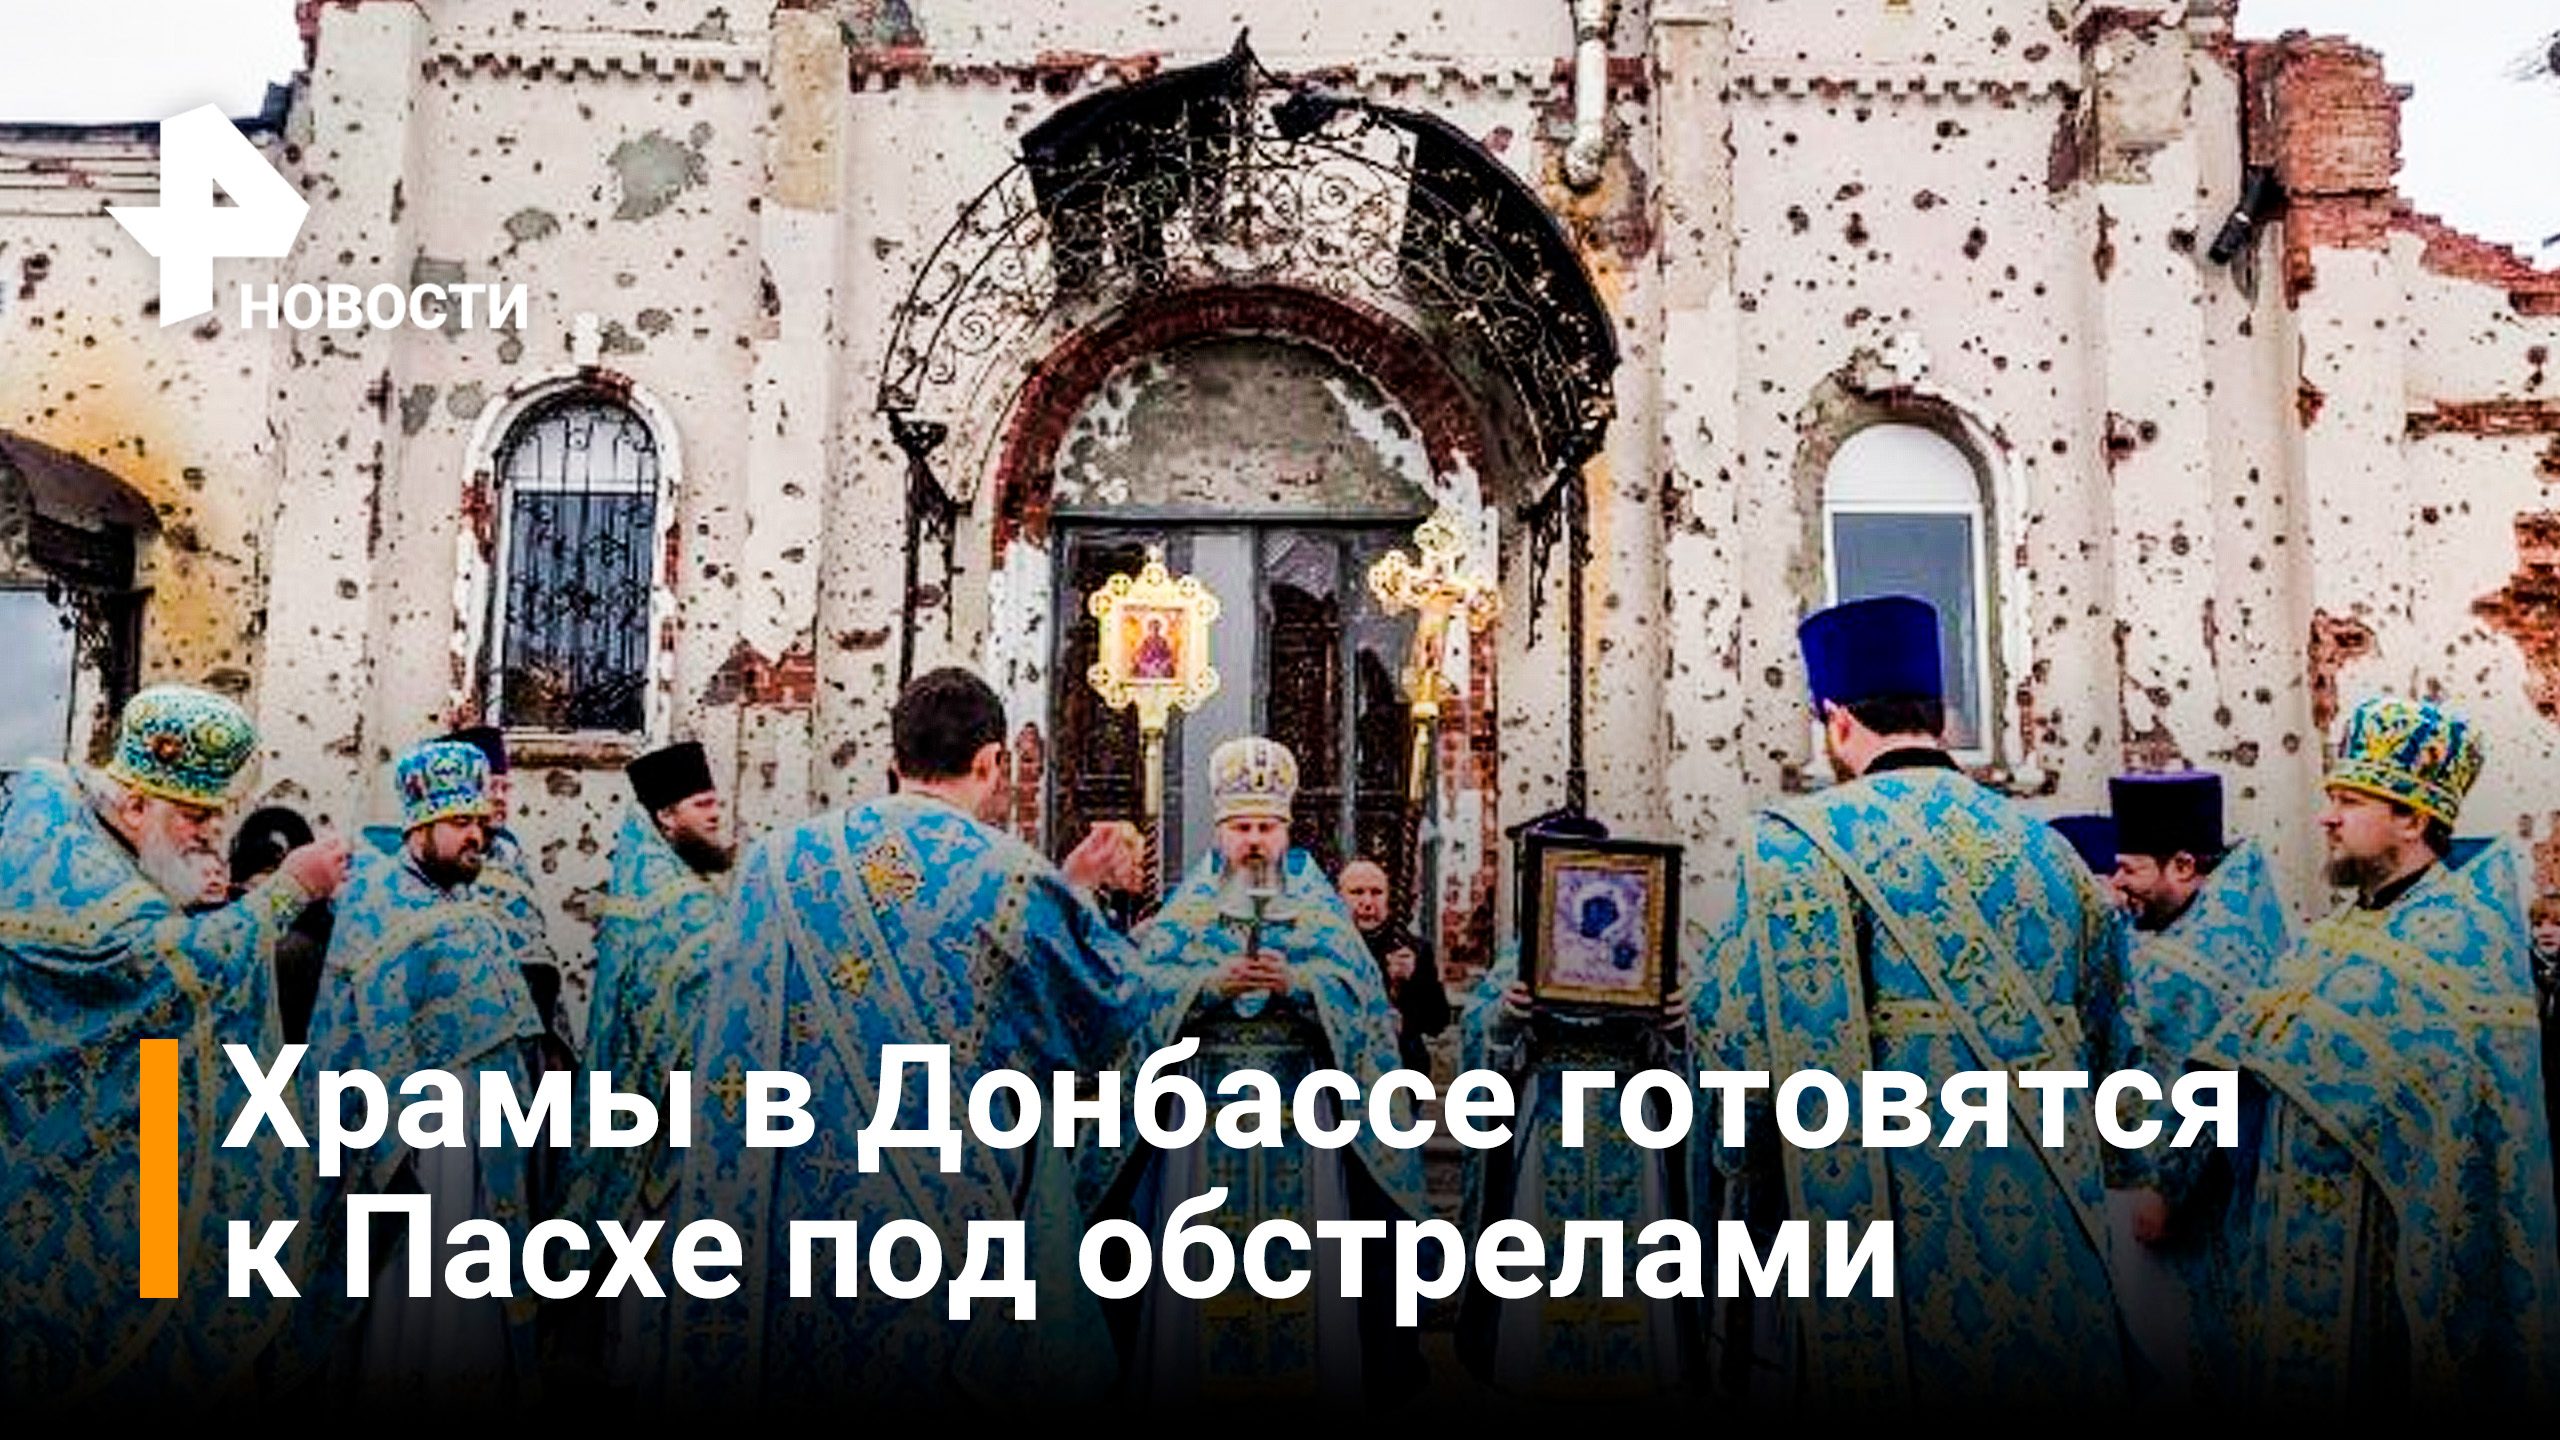 В храмах Донбасса готовятся к богослужениям под обстрелами ВСУ / РЕН Новости